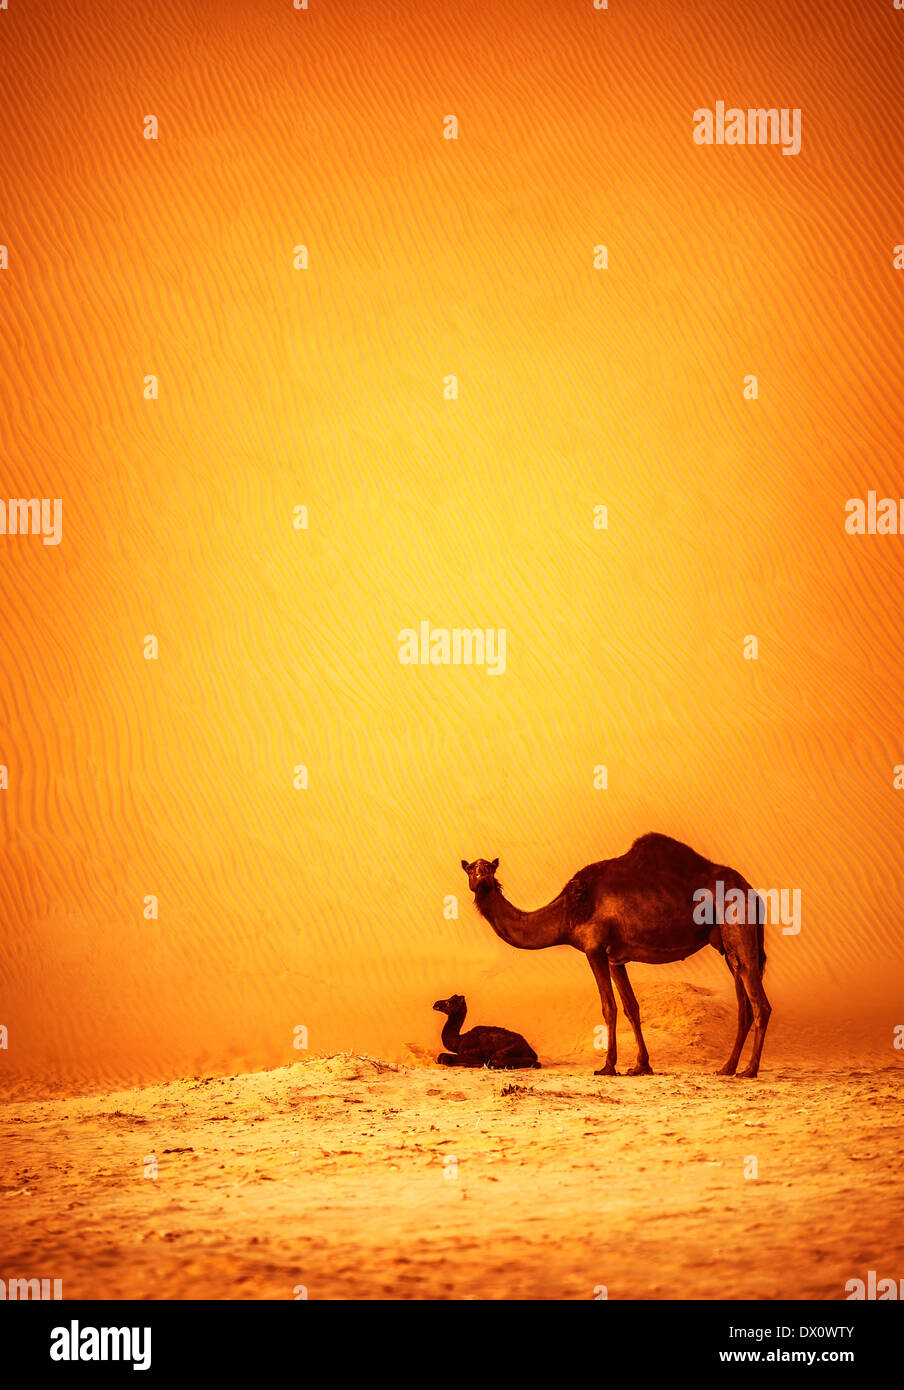 Familie von Kamelen in Wüste, große groß Kamel mit ihrem Kind ruht auf heißem Sand Düne, schöne Natur, wilde Säugetier Stockfoto